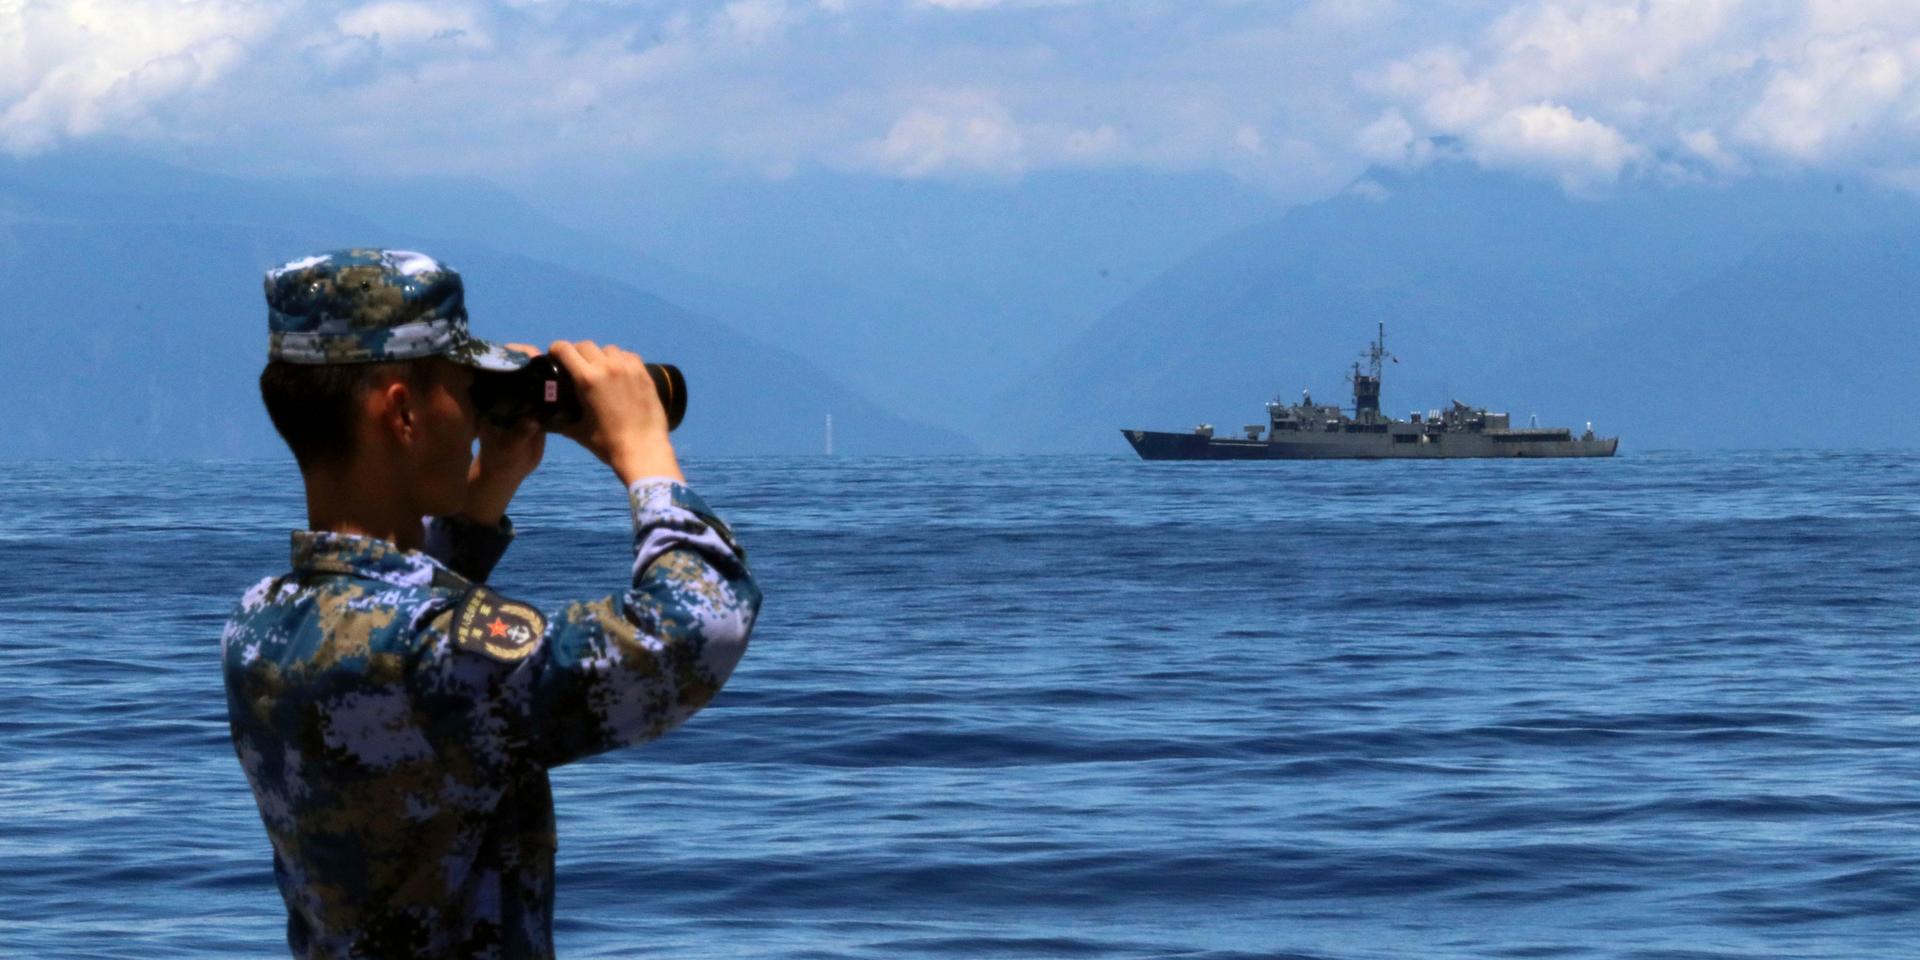 Militär följer i kikare en taiwanesisk fregatt på avstånd under de omfattande kinesiska militärövningarna kring Taiwan efter besöket av den amerikanska toppolitikern och talmannen Nancy Pelosi.